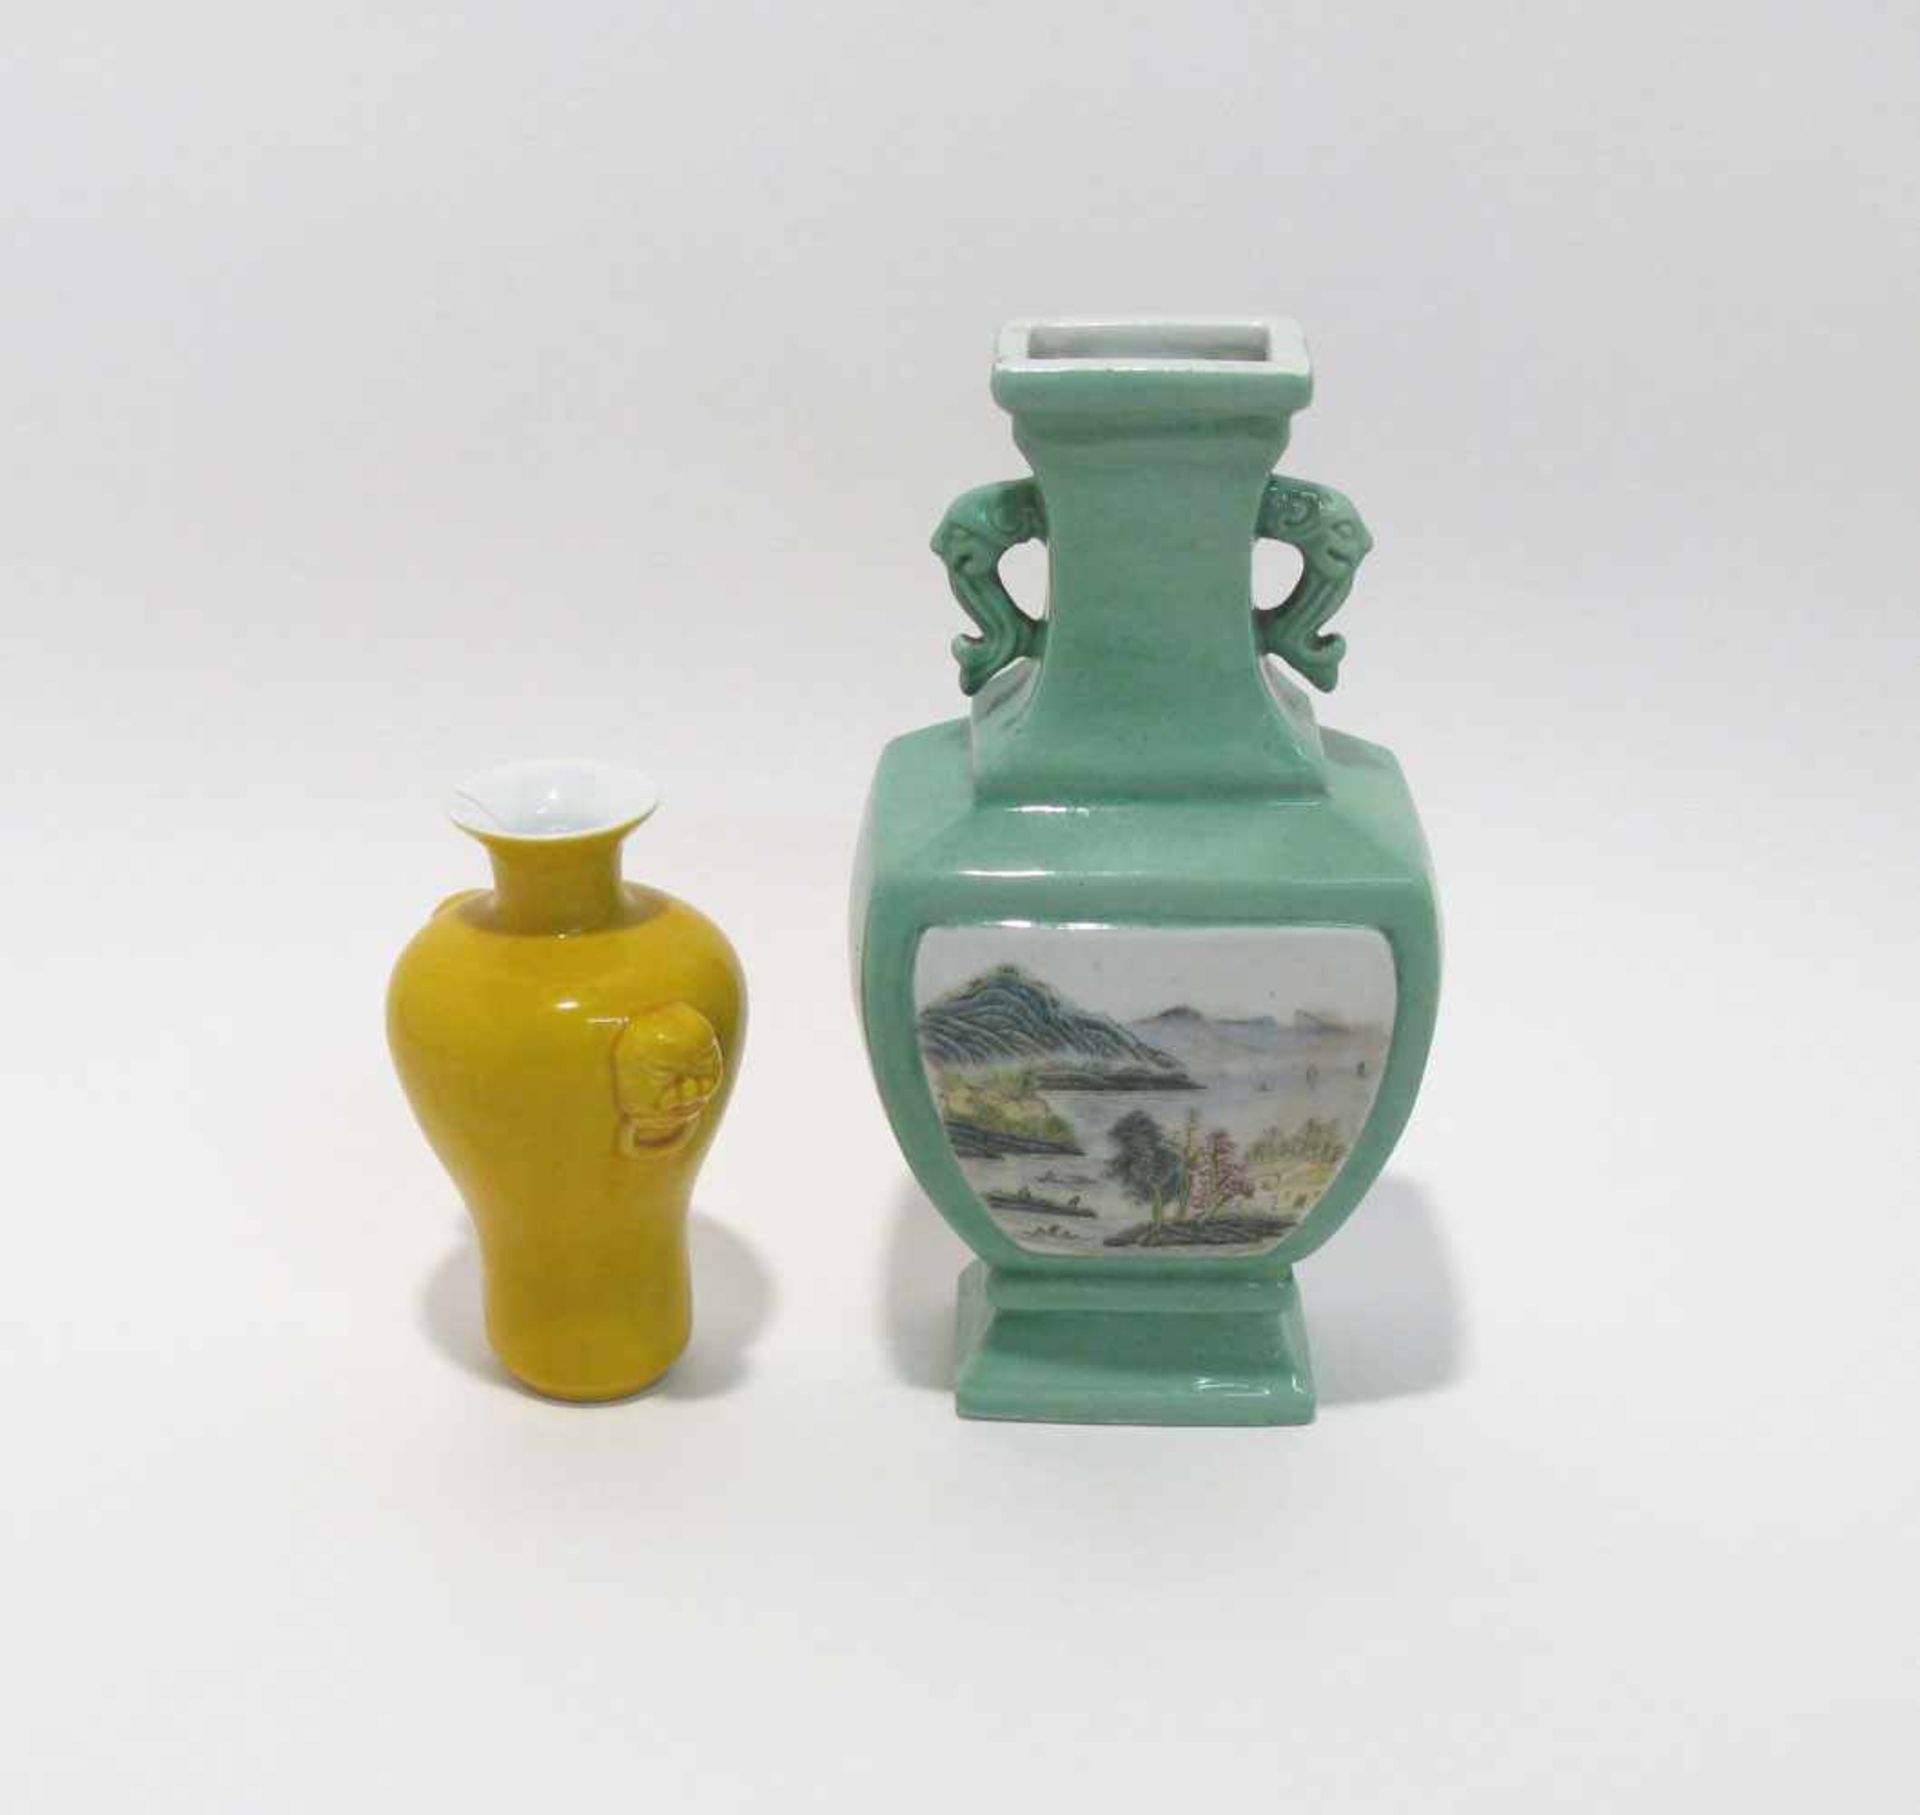 Zwei Vasen China. Porzellan. Jeweils mit Tierkopfgriffen. Gelber Fond bzw. grün mit polychromen